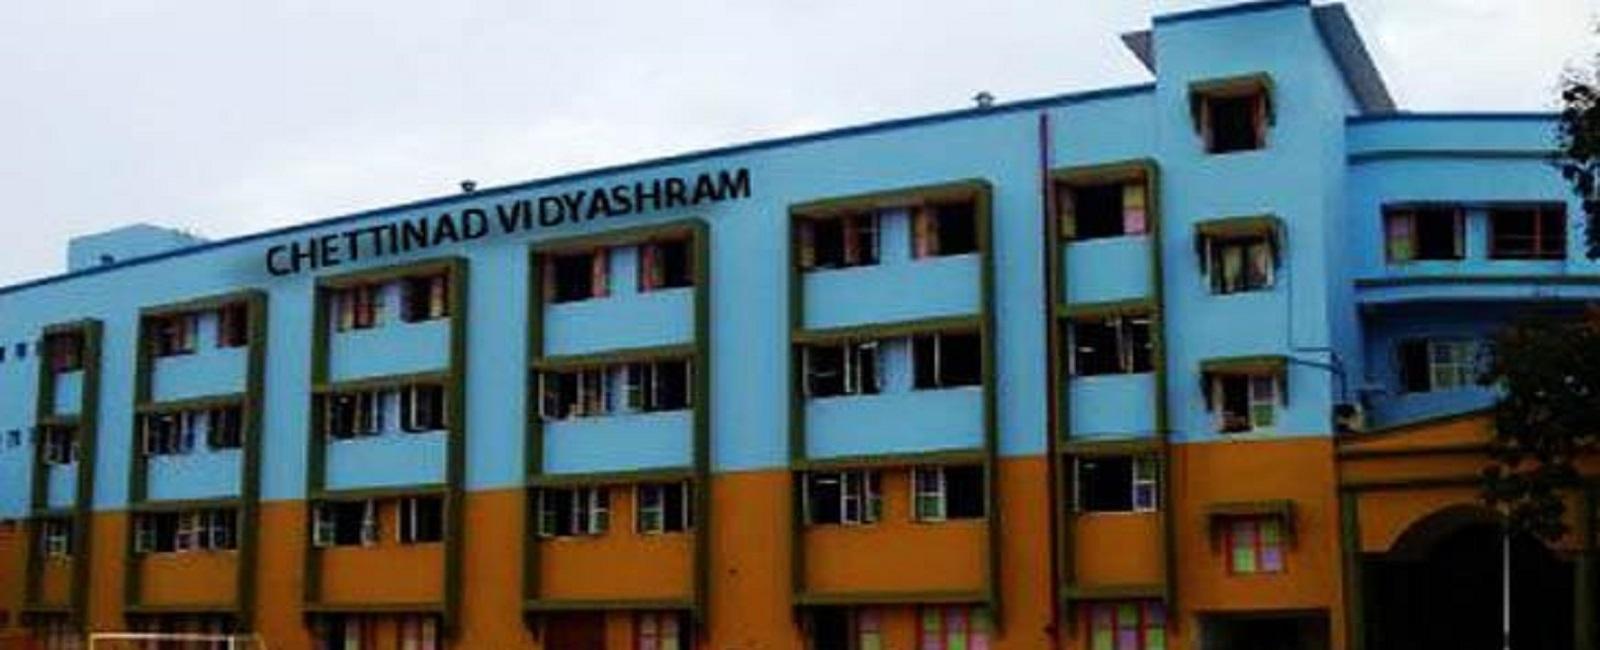 Chettinad-Vidyashram-RA-Puram-1